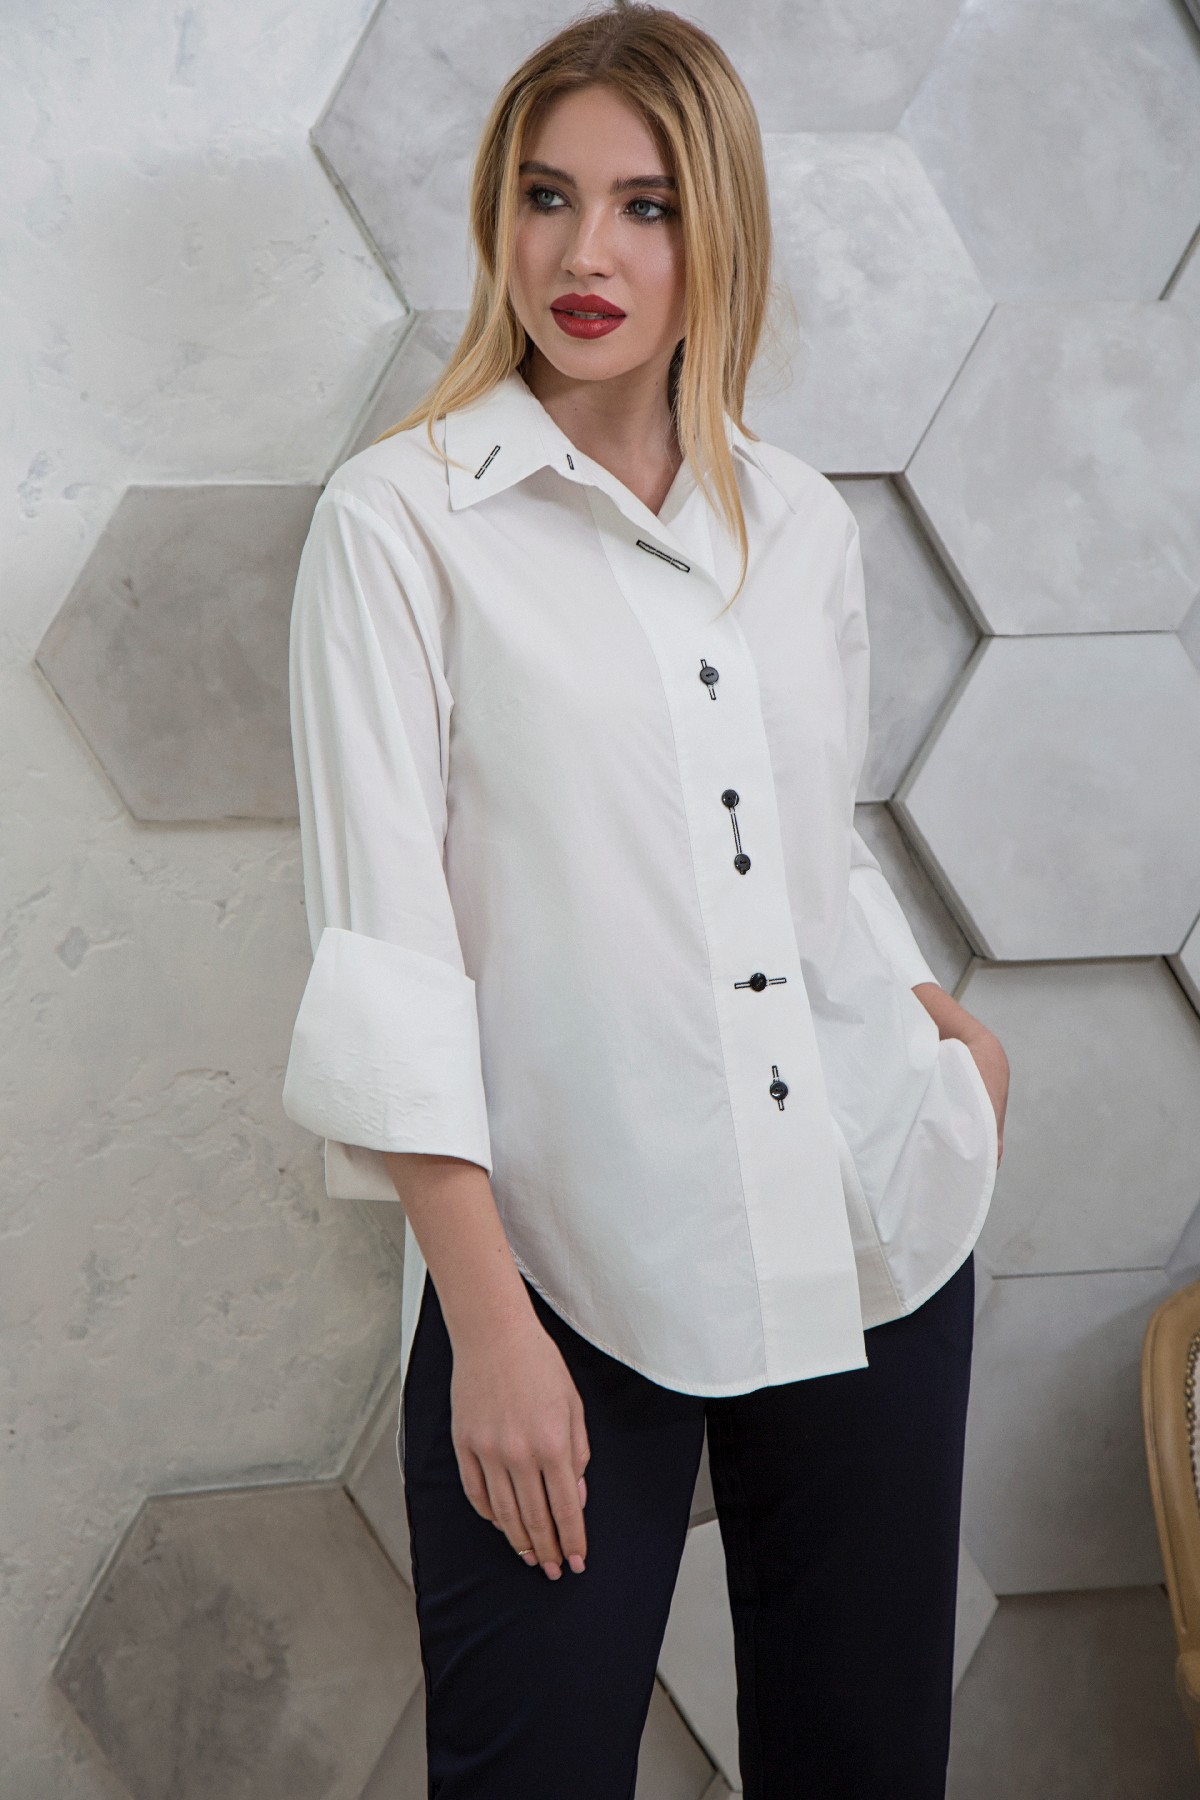 Как модно носить белую рубашку? Как правильно выбрать базовую рубашку? Образы с белой рубашкой